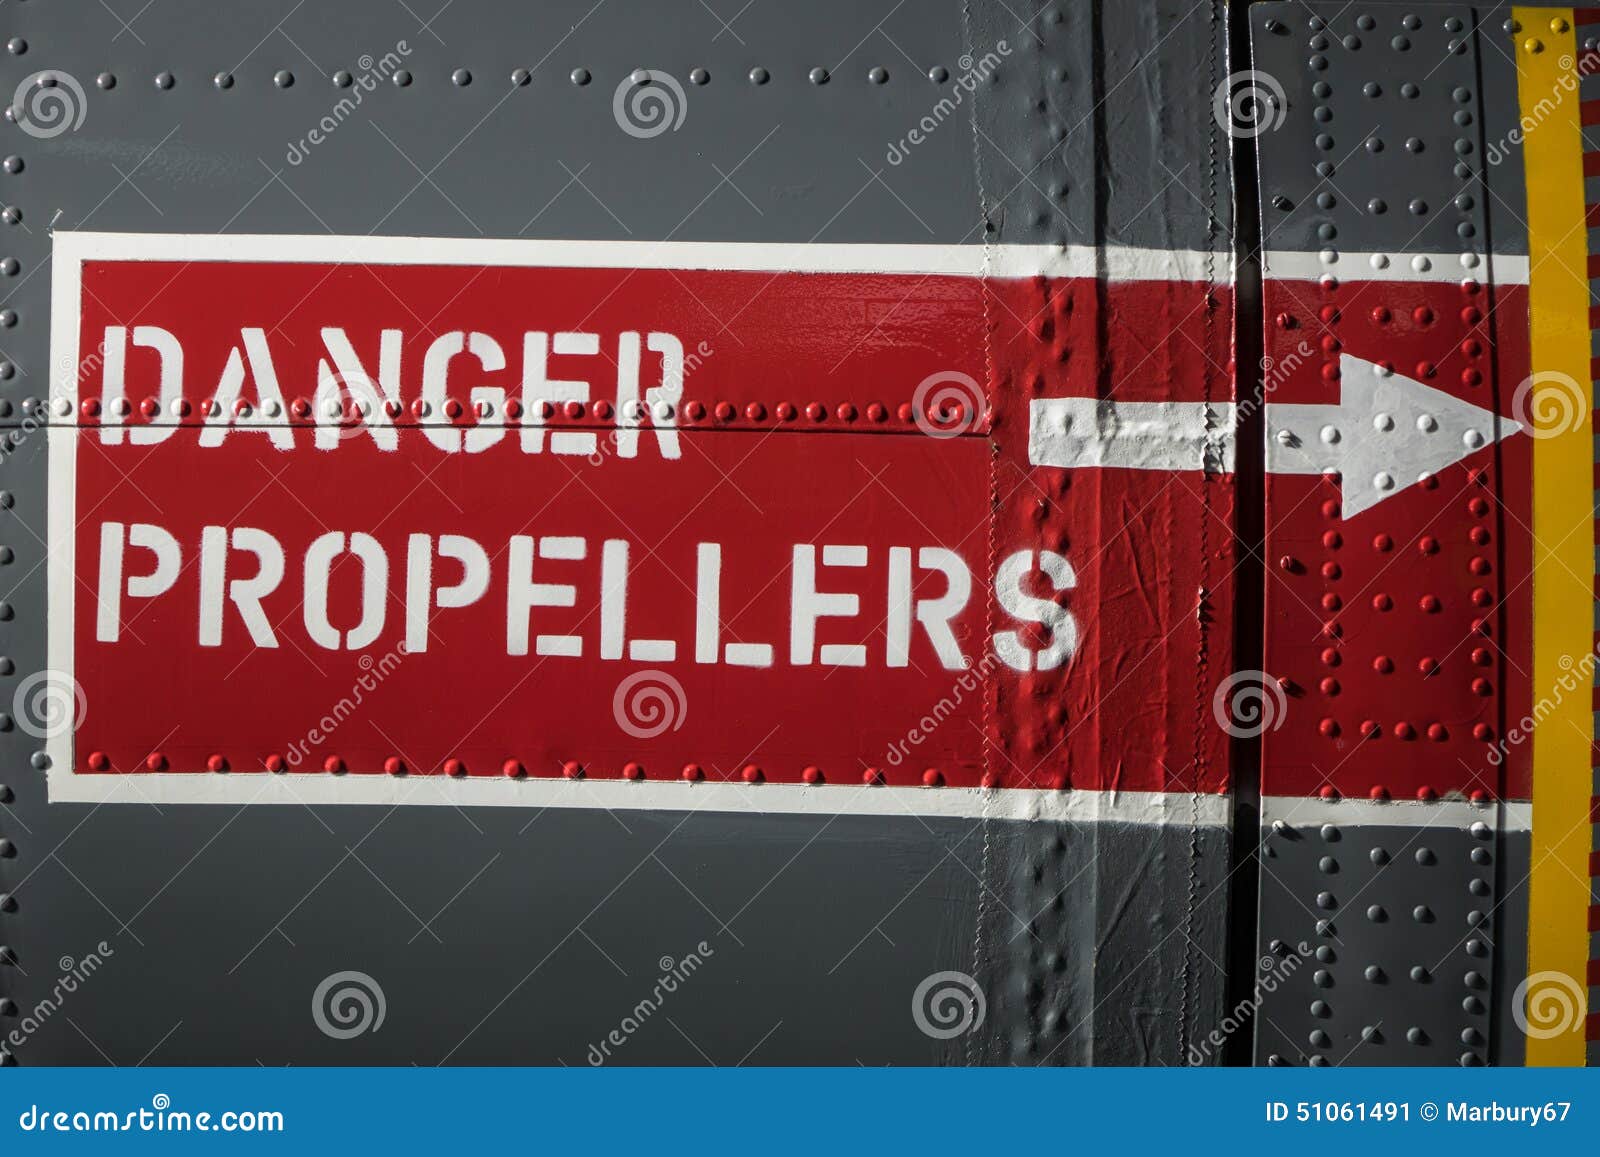 #901 5" No Step Av Aircraft Airplane Warning Decal Sticker LAMINATED GLOSS 